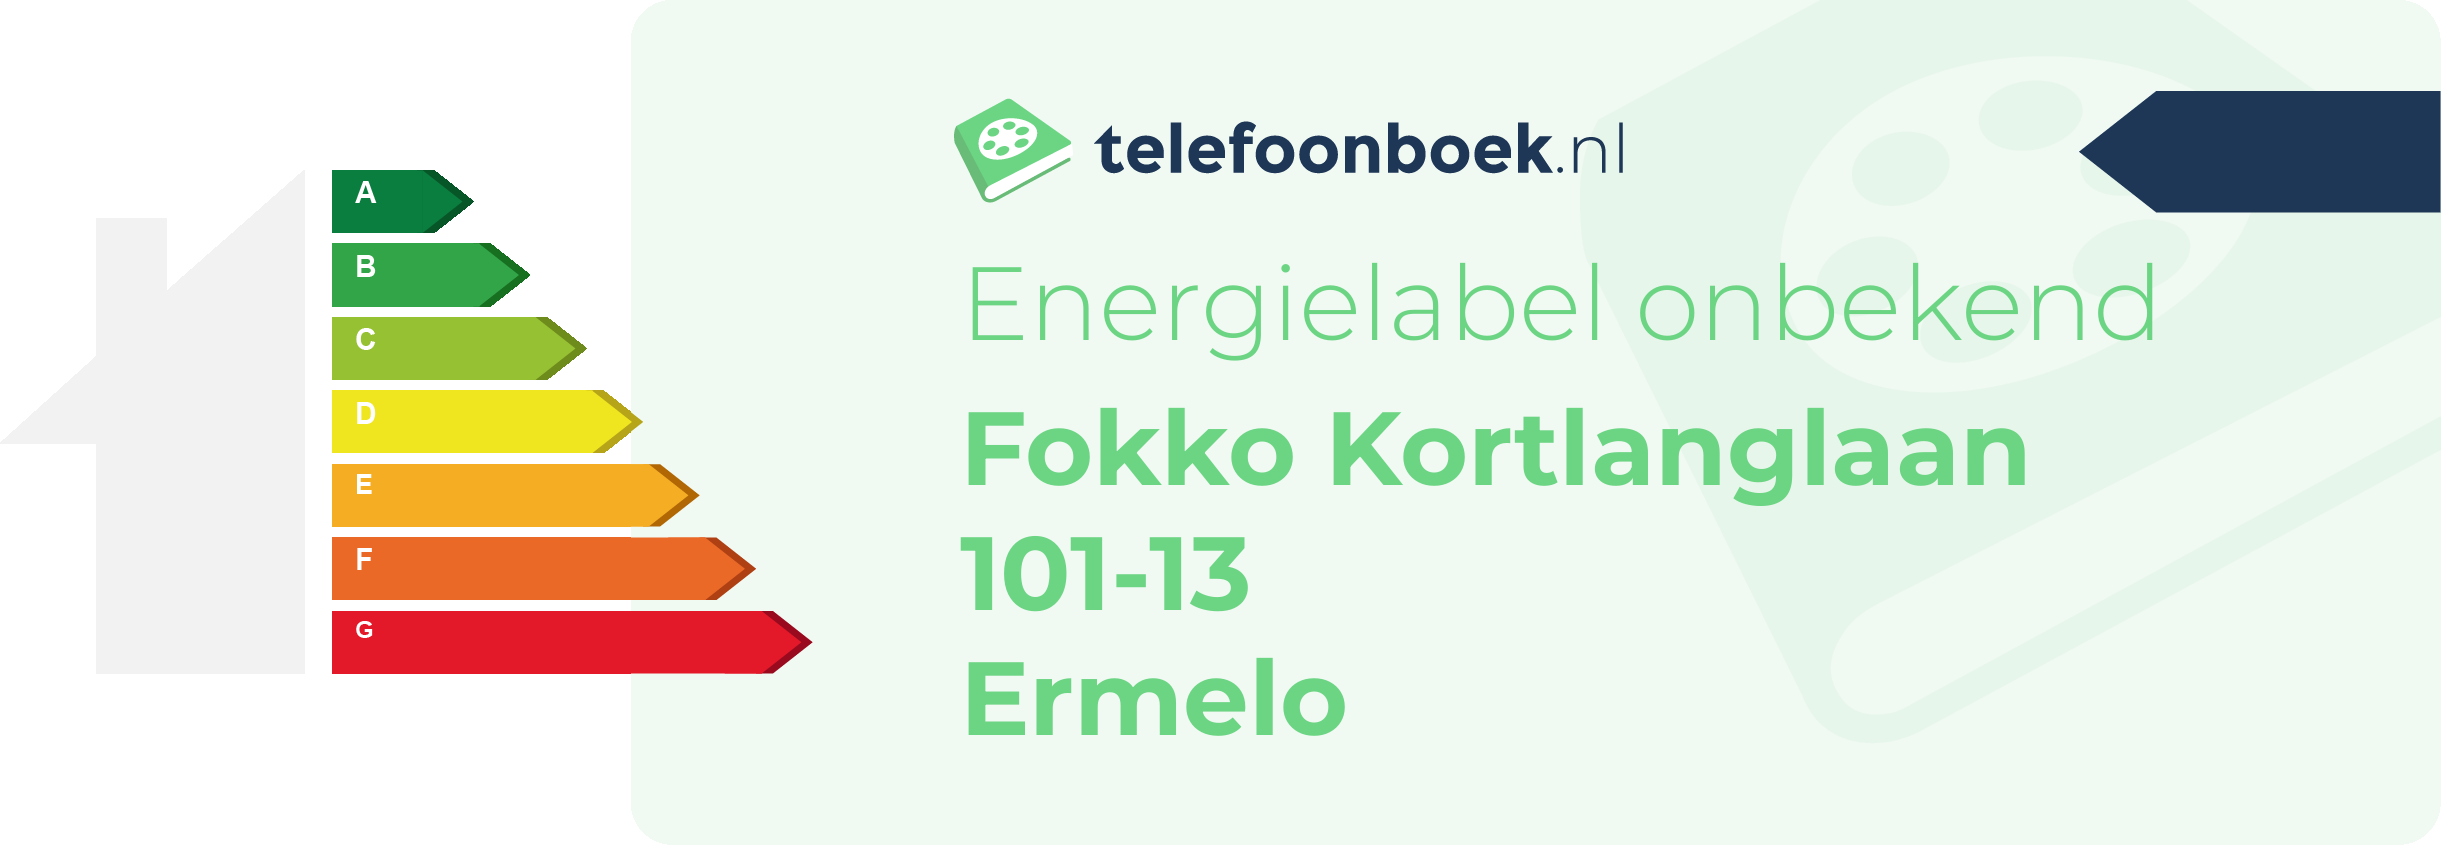 Energielabel Fokko Kortlanglaan 101-13 Ermelo